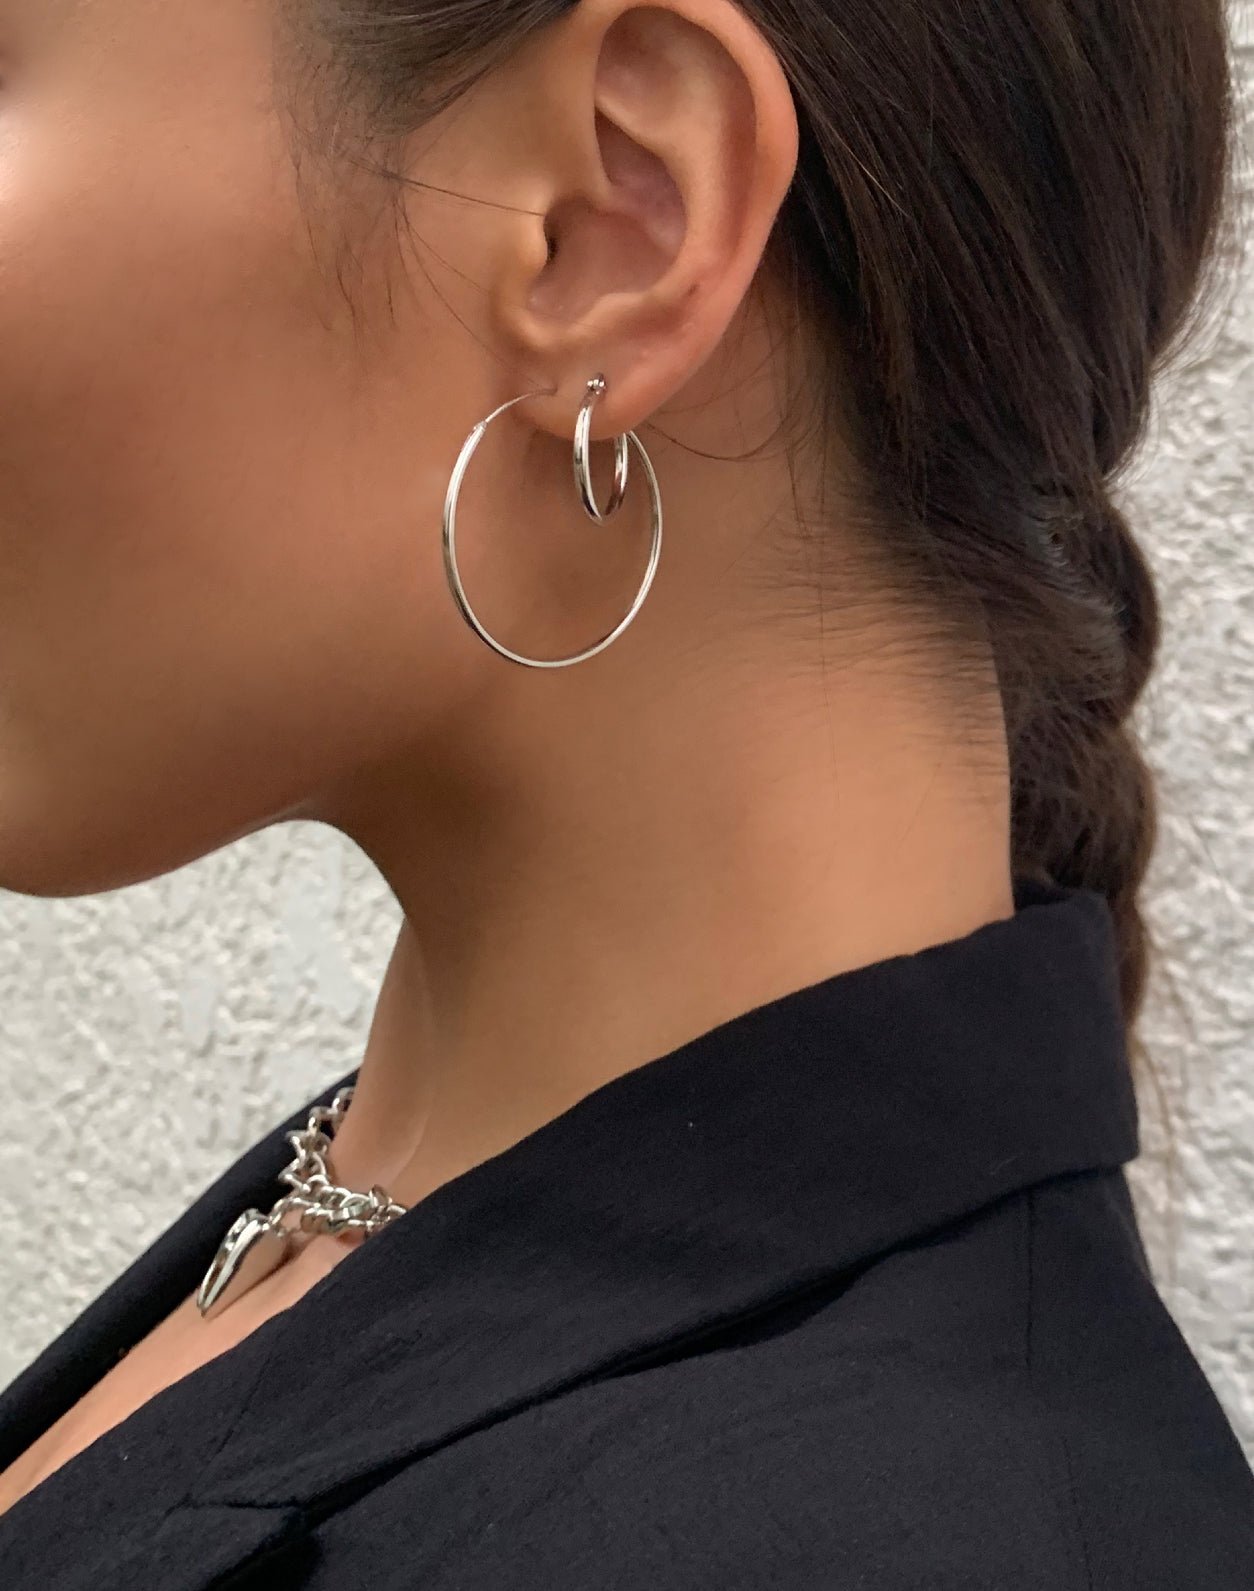 The Simple Hoop Earrings in Silver